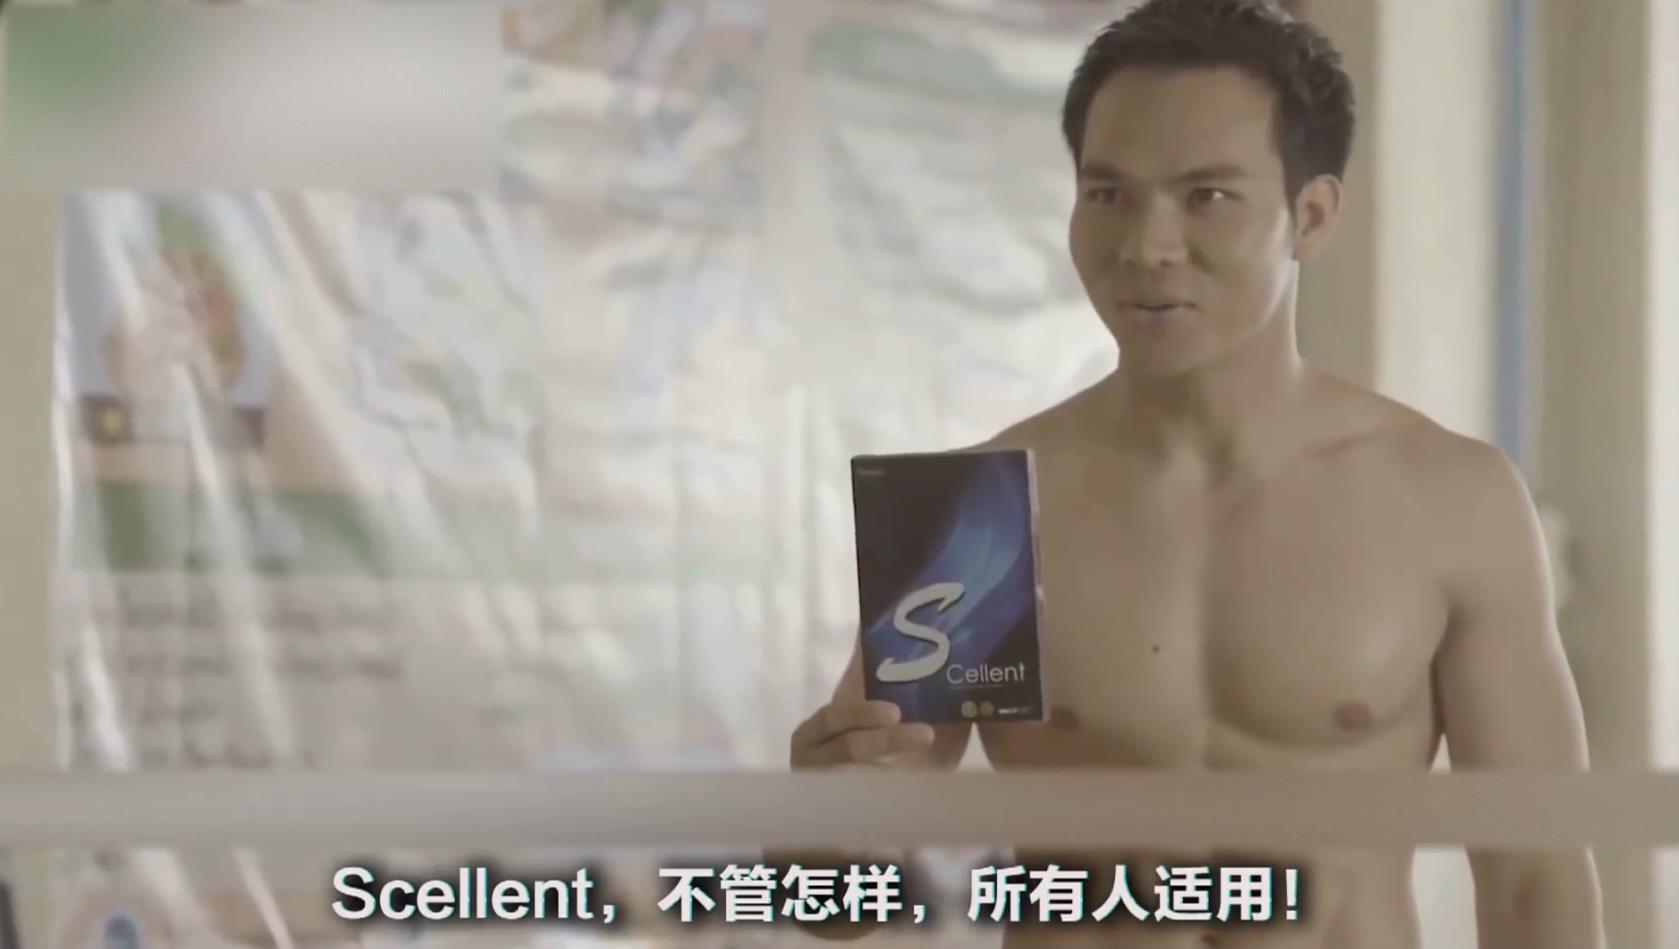 好笑的泰國广告 減肥广告